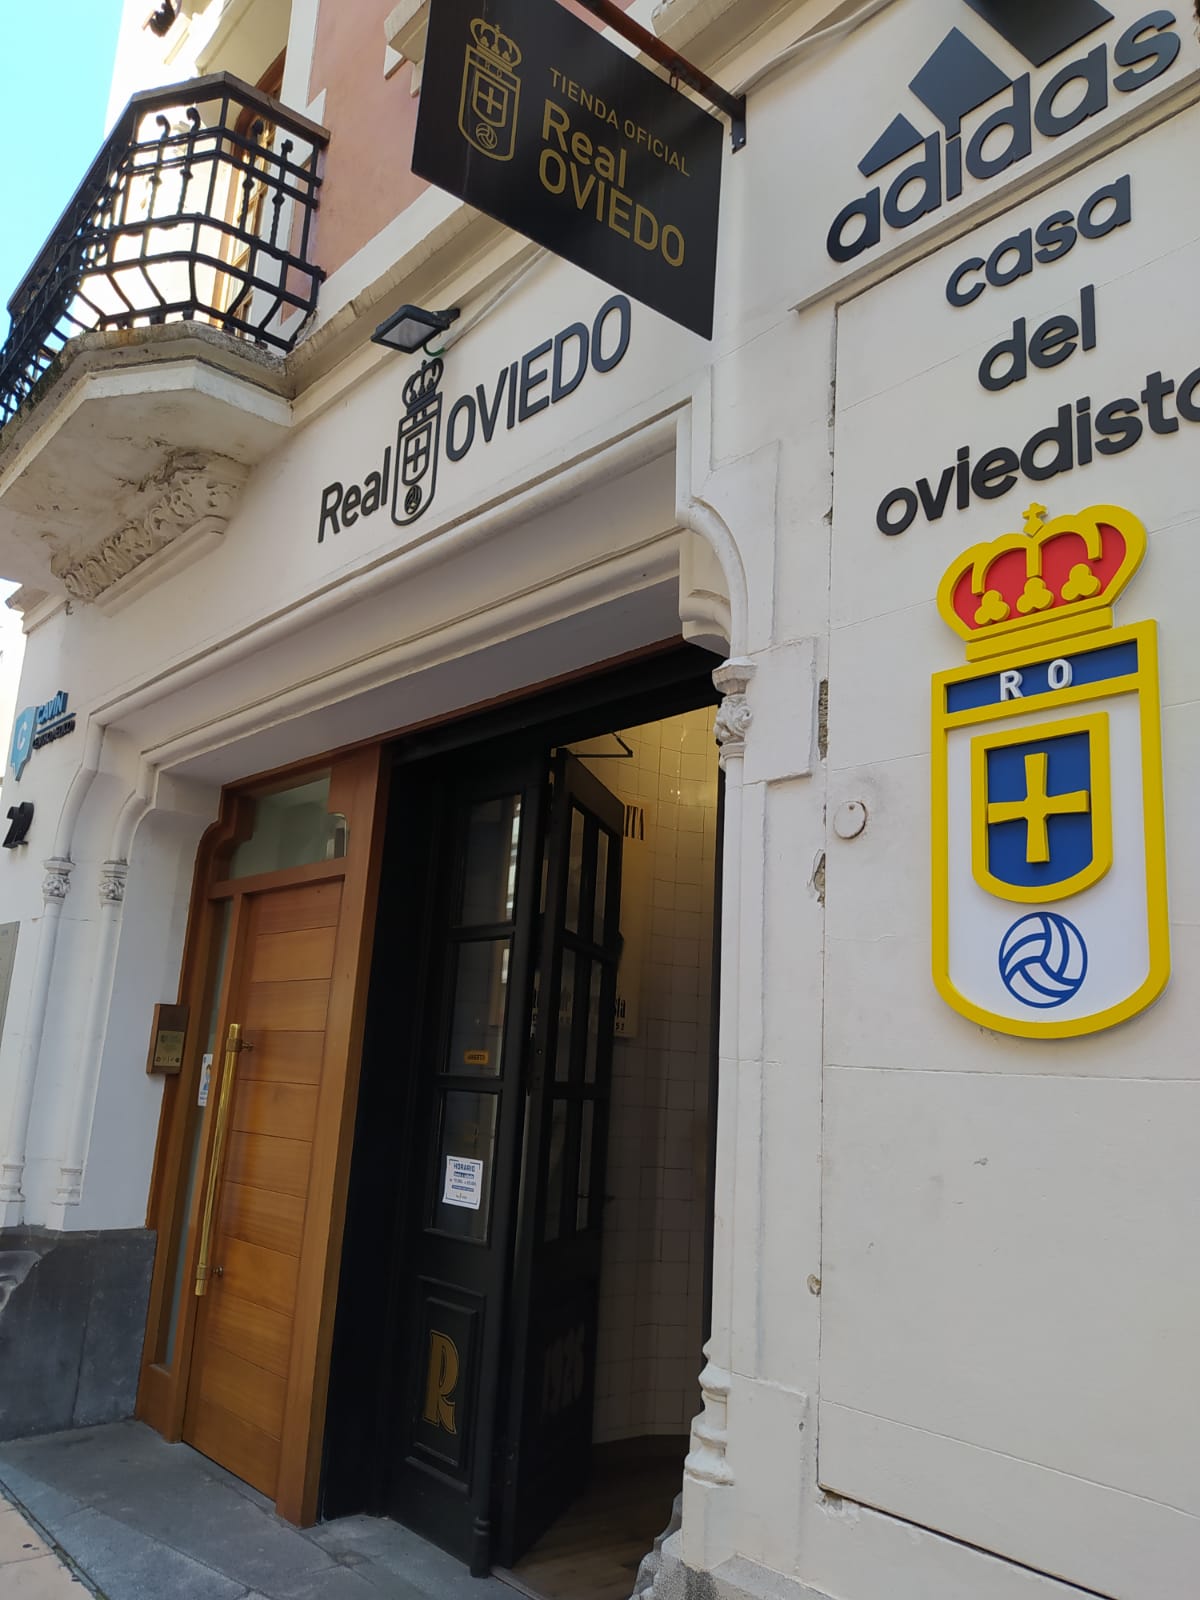 cansado Circo Me sorprendió CreoEnOviedo - Tienda Oficial Real Oviedo - Casa del Oviedista